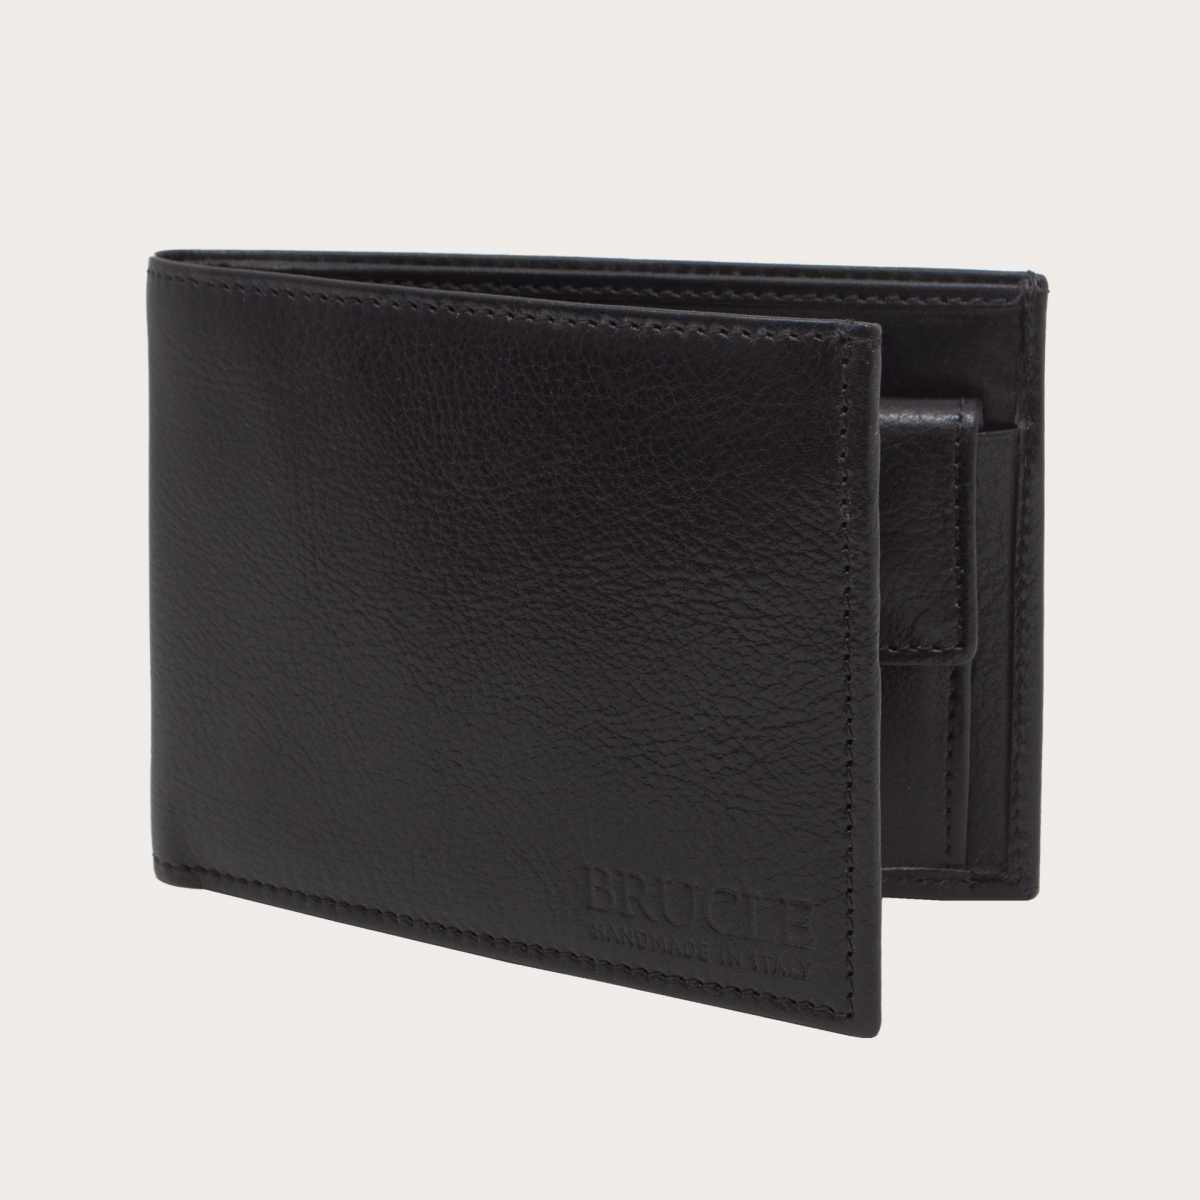 White Card Holder Handmade Bifold Men Wallet Genuine Leather Purse | eBay